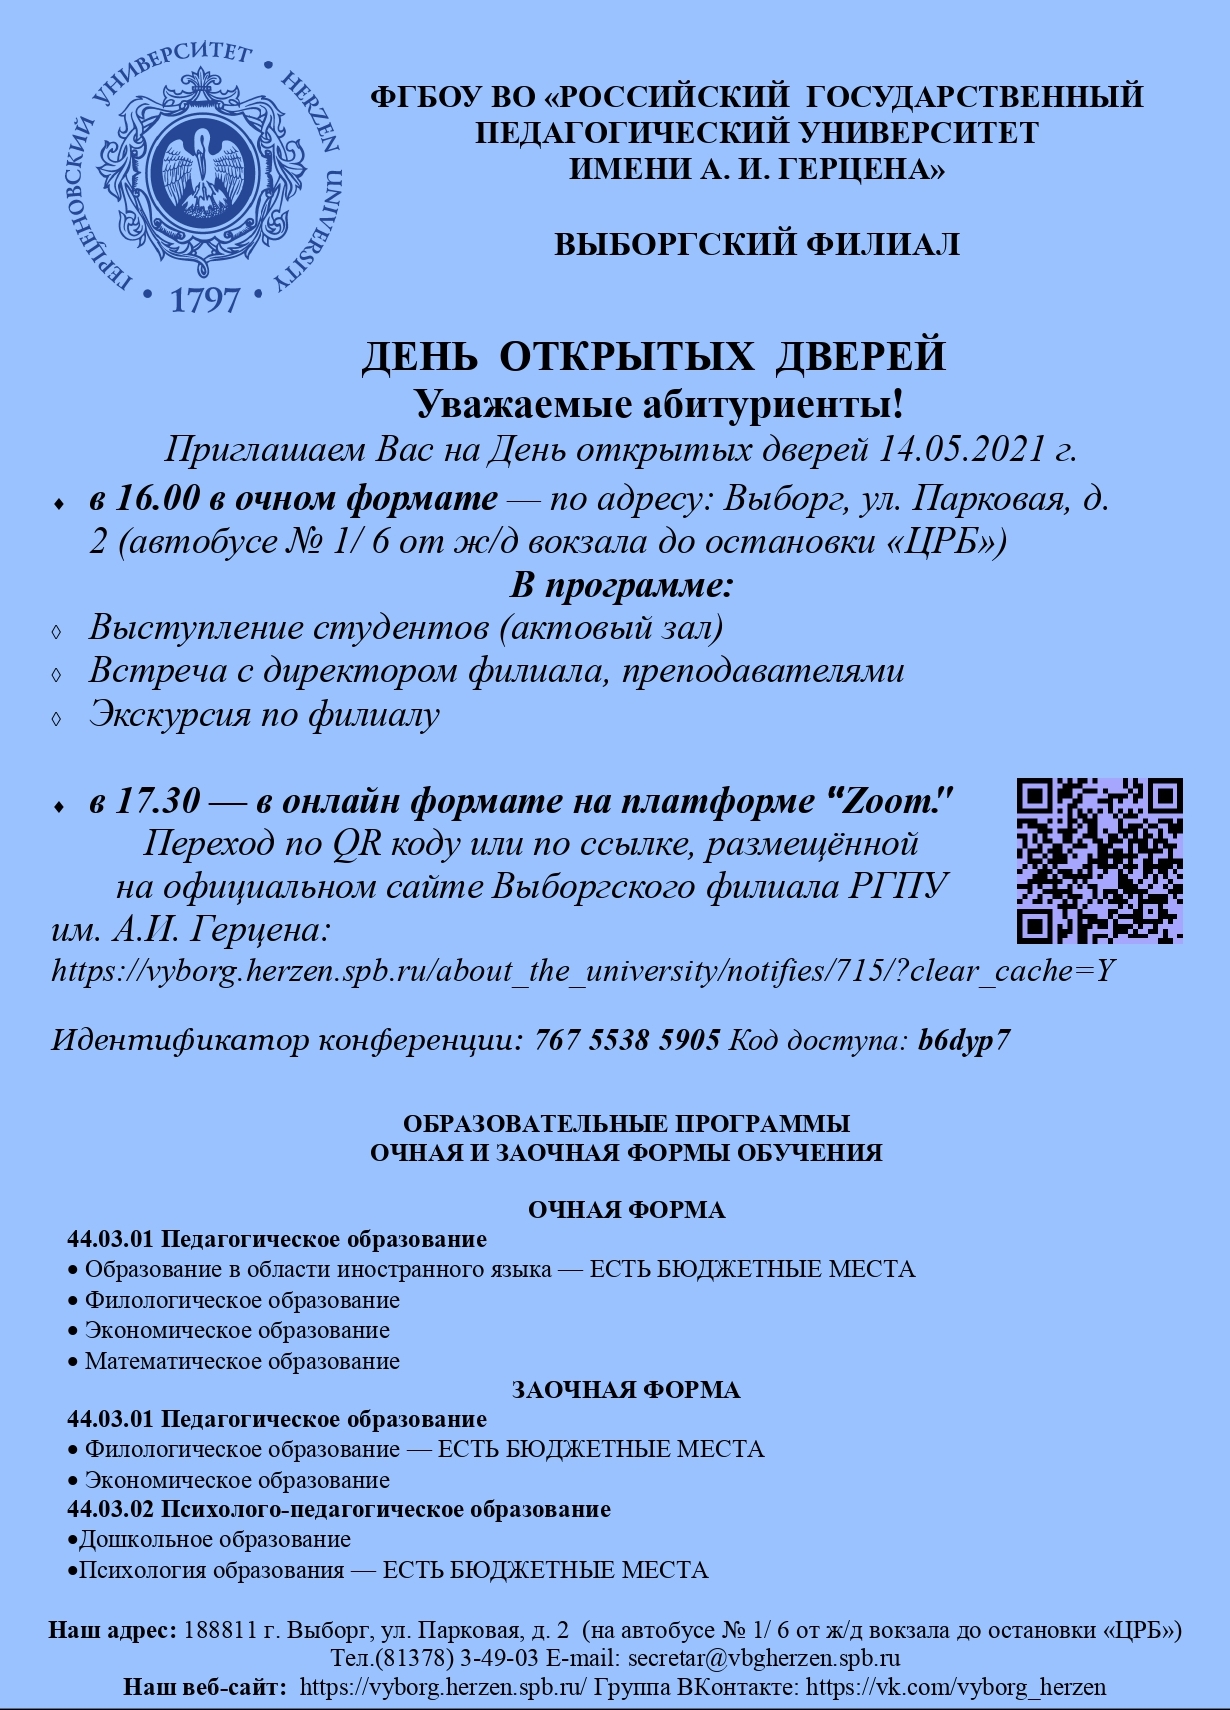 ВФ РГПУ день открытых дверей 13 14 мая 2021